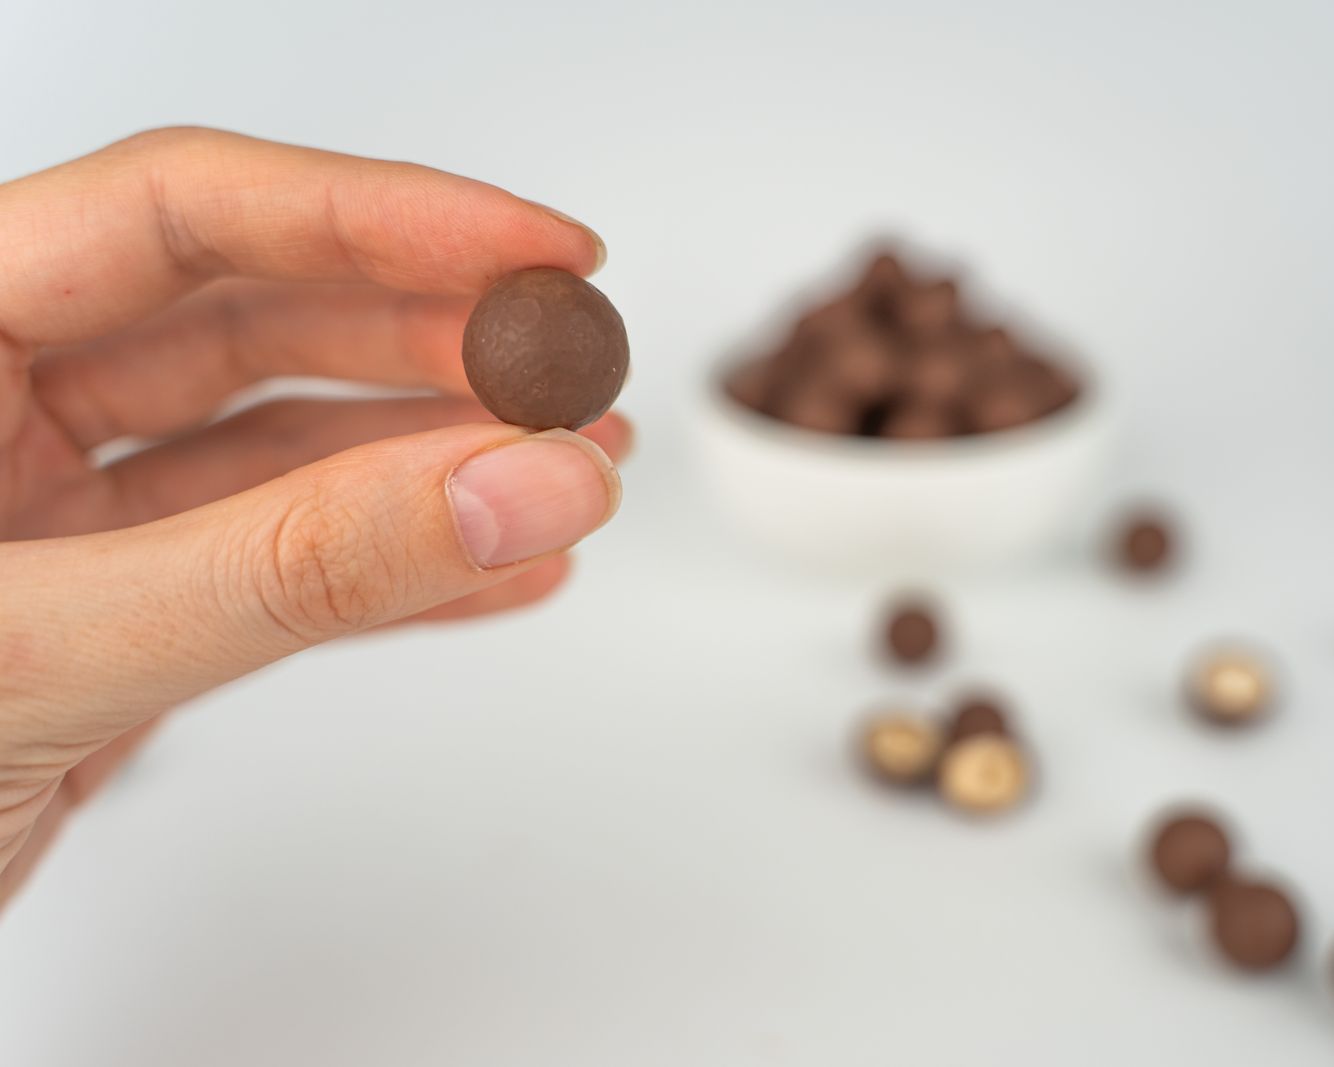 Vilgain Lískové ořechy v čokoládě